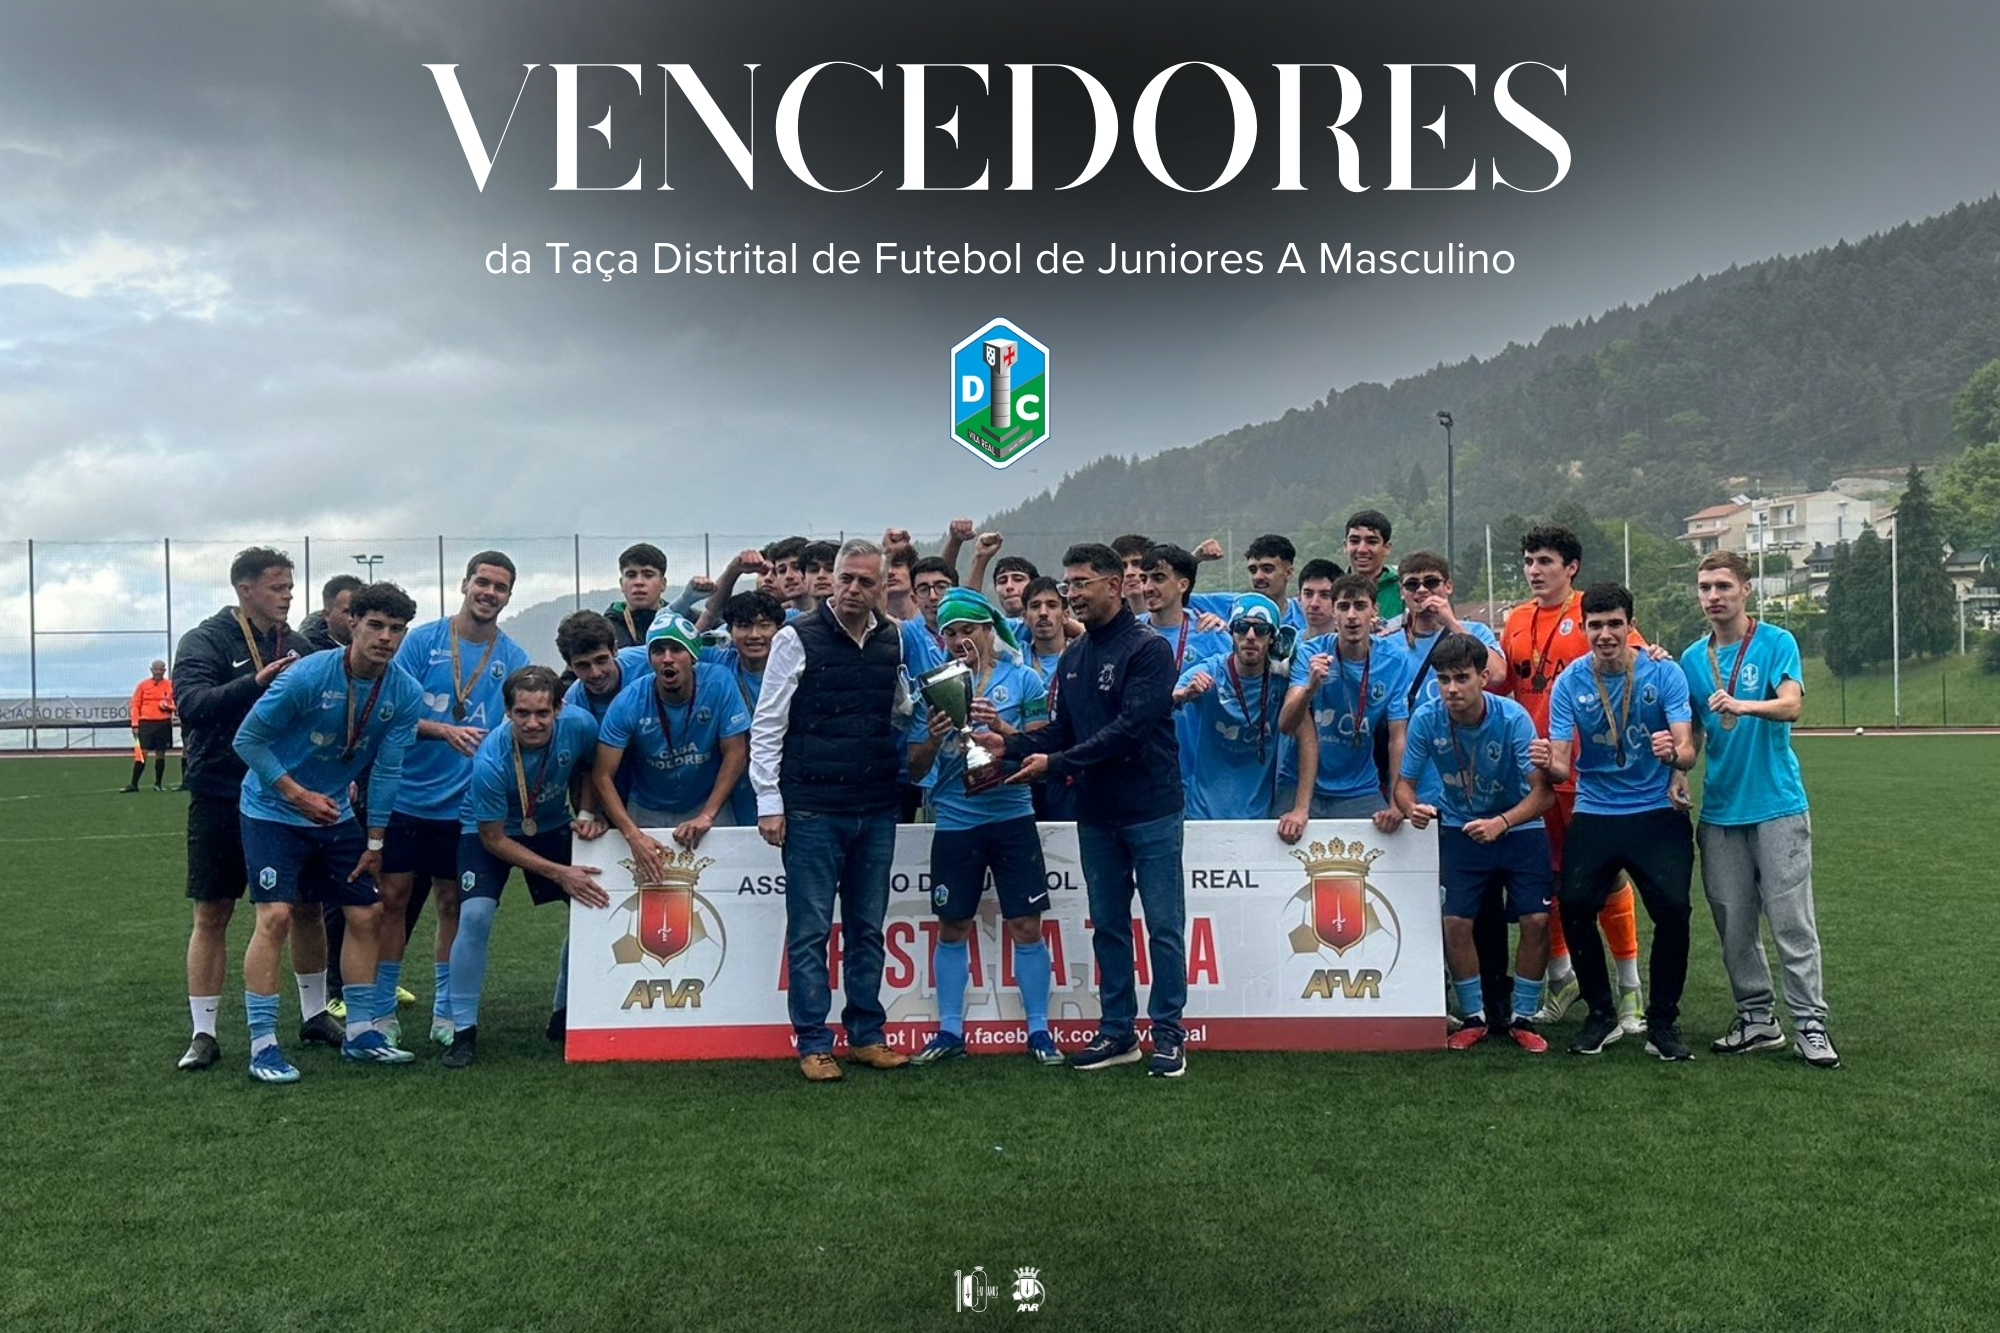 ADCE Diogo Cão vencedor da Final da Taça Distrital de Futebol Masculino Júnior “A”